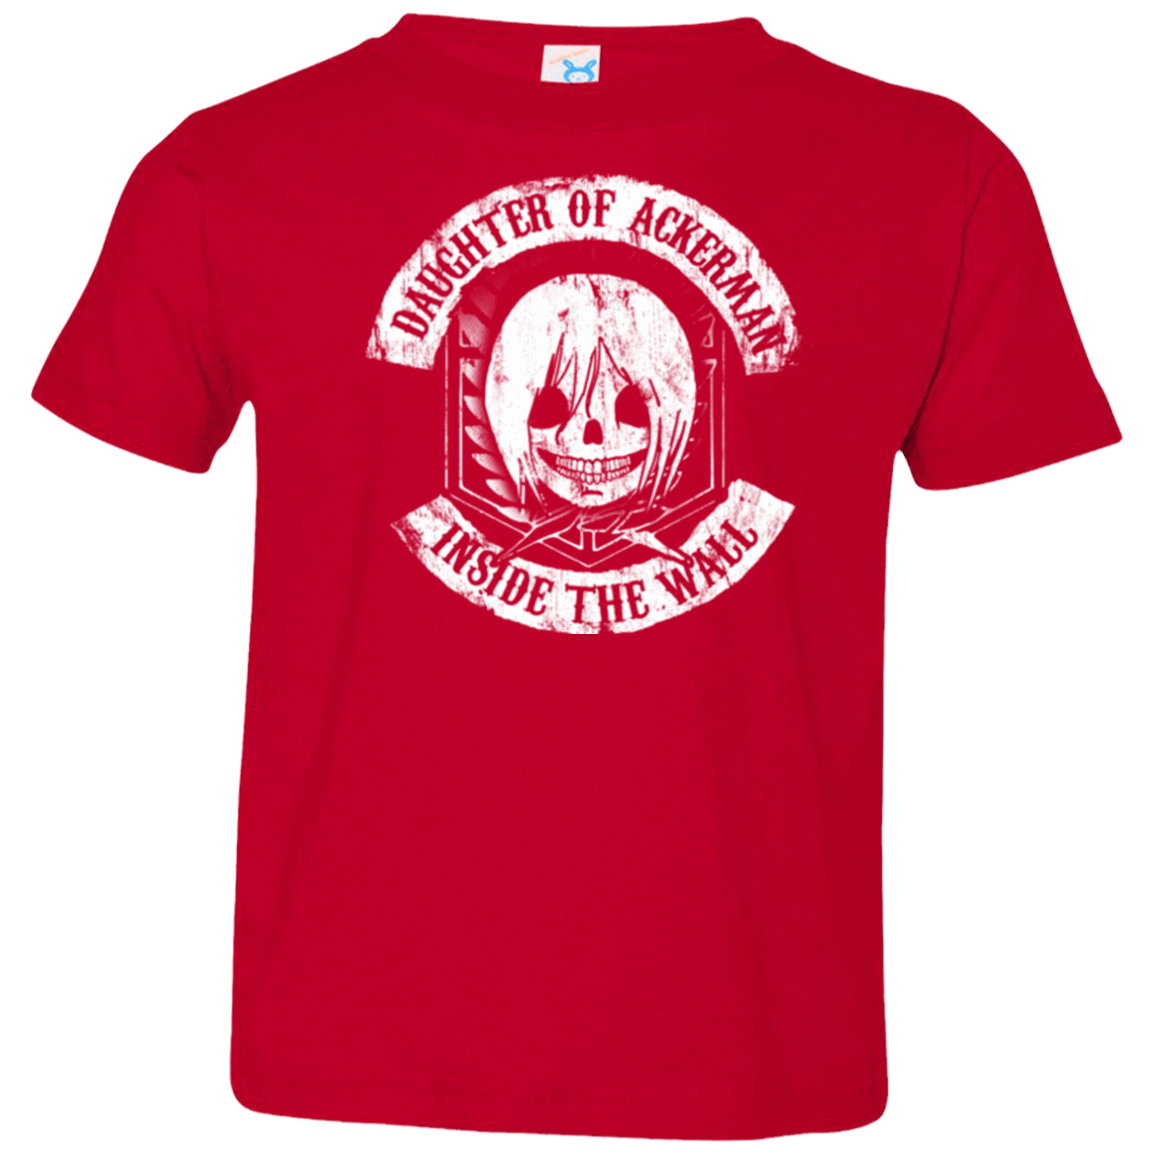 T-Shirts Red / 2T Daughter of Ackerman Toddler Premium T-Shirt